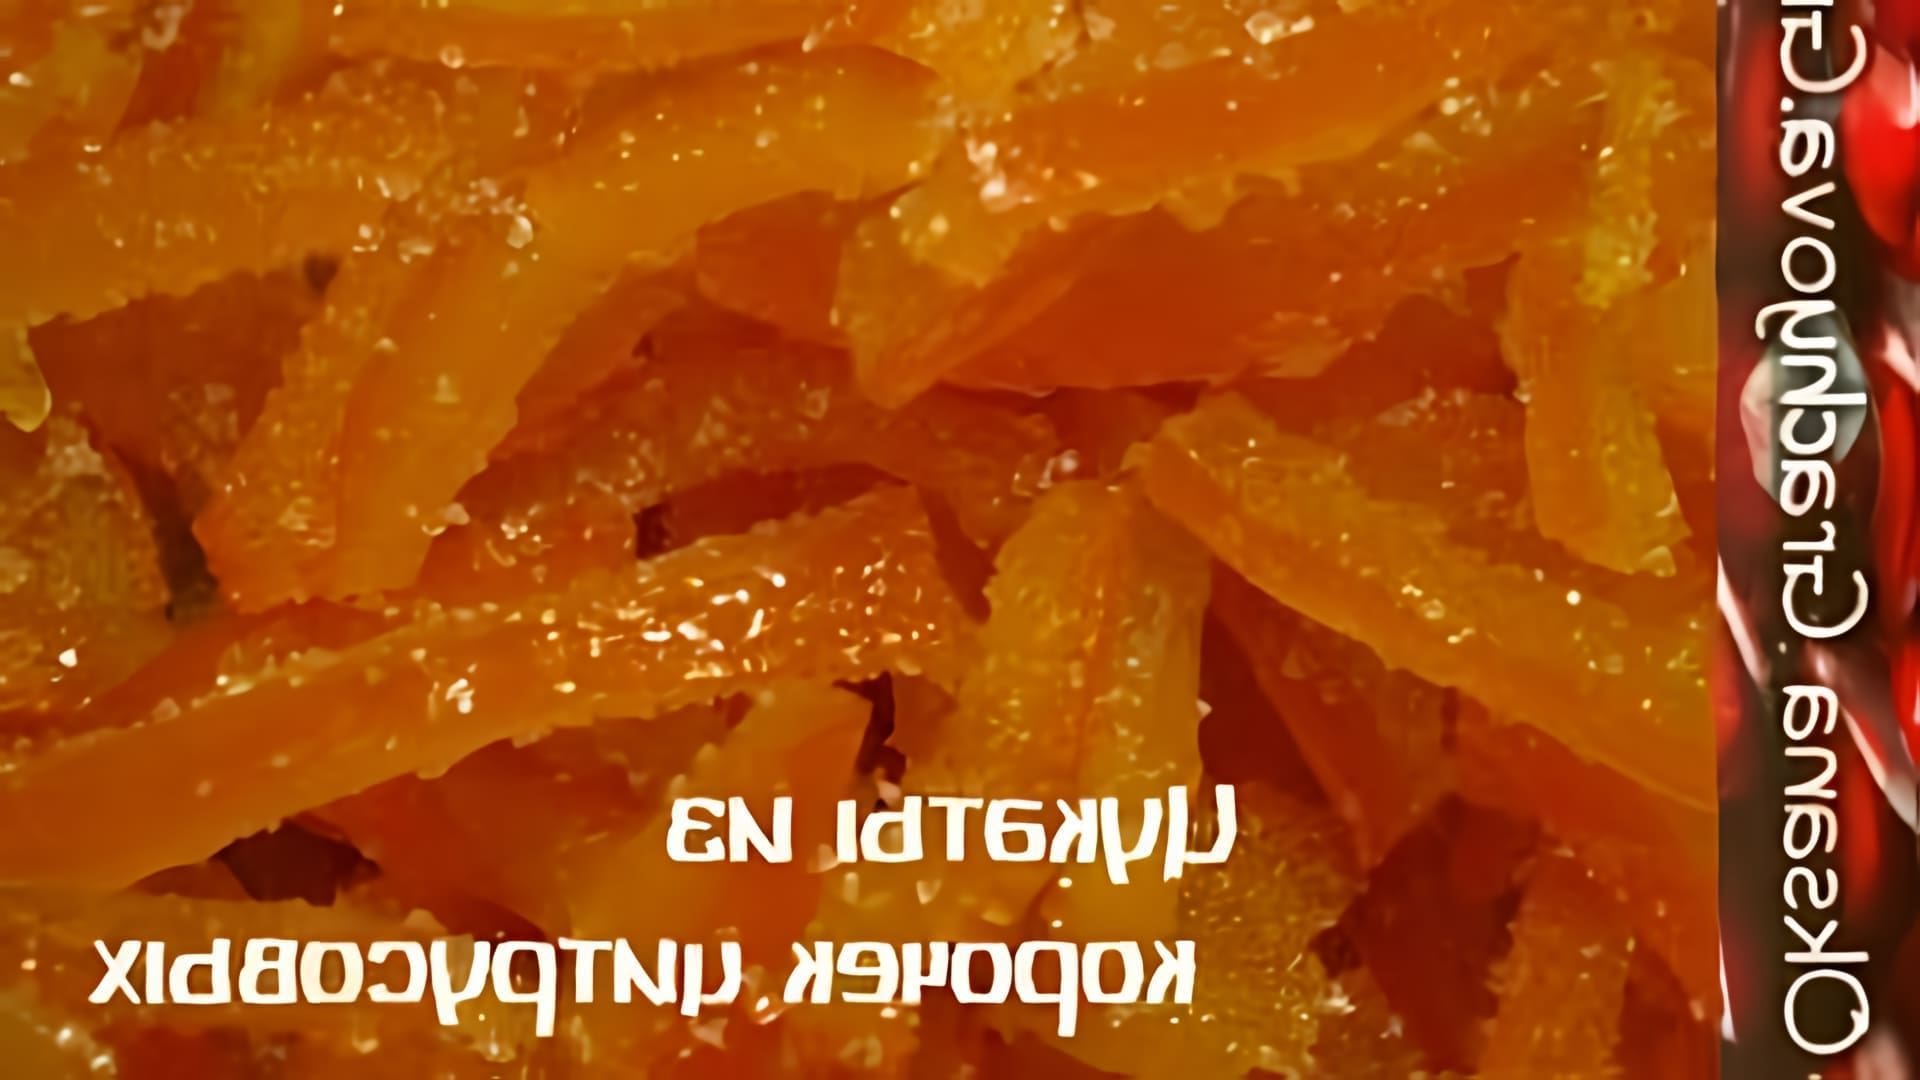 В этом видео-ролике будет показан простой и правильный рецепт приготовления цукатов из корочек цитрусовых по греческому рецепту